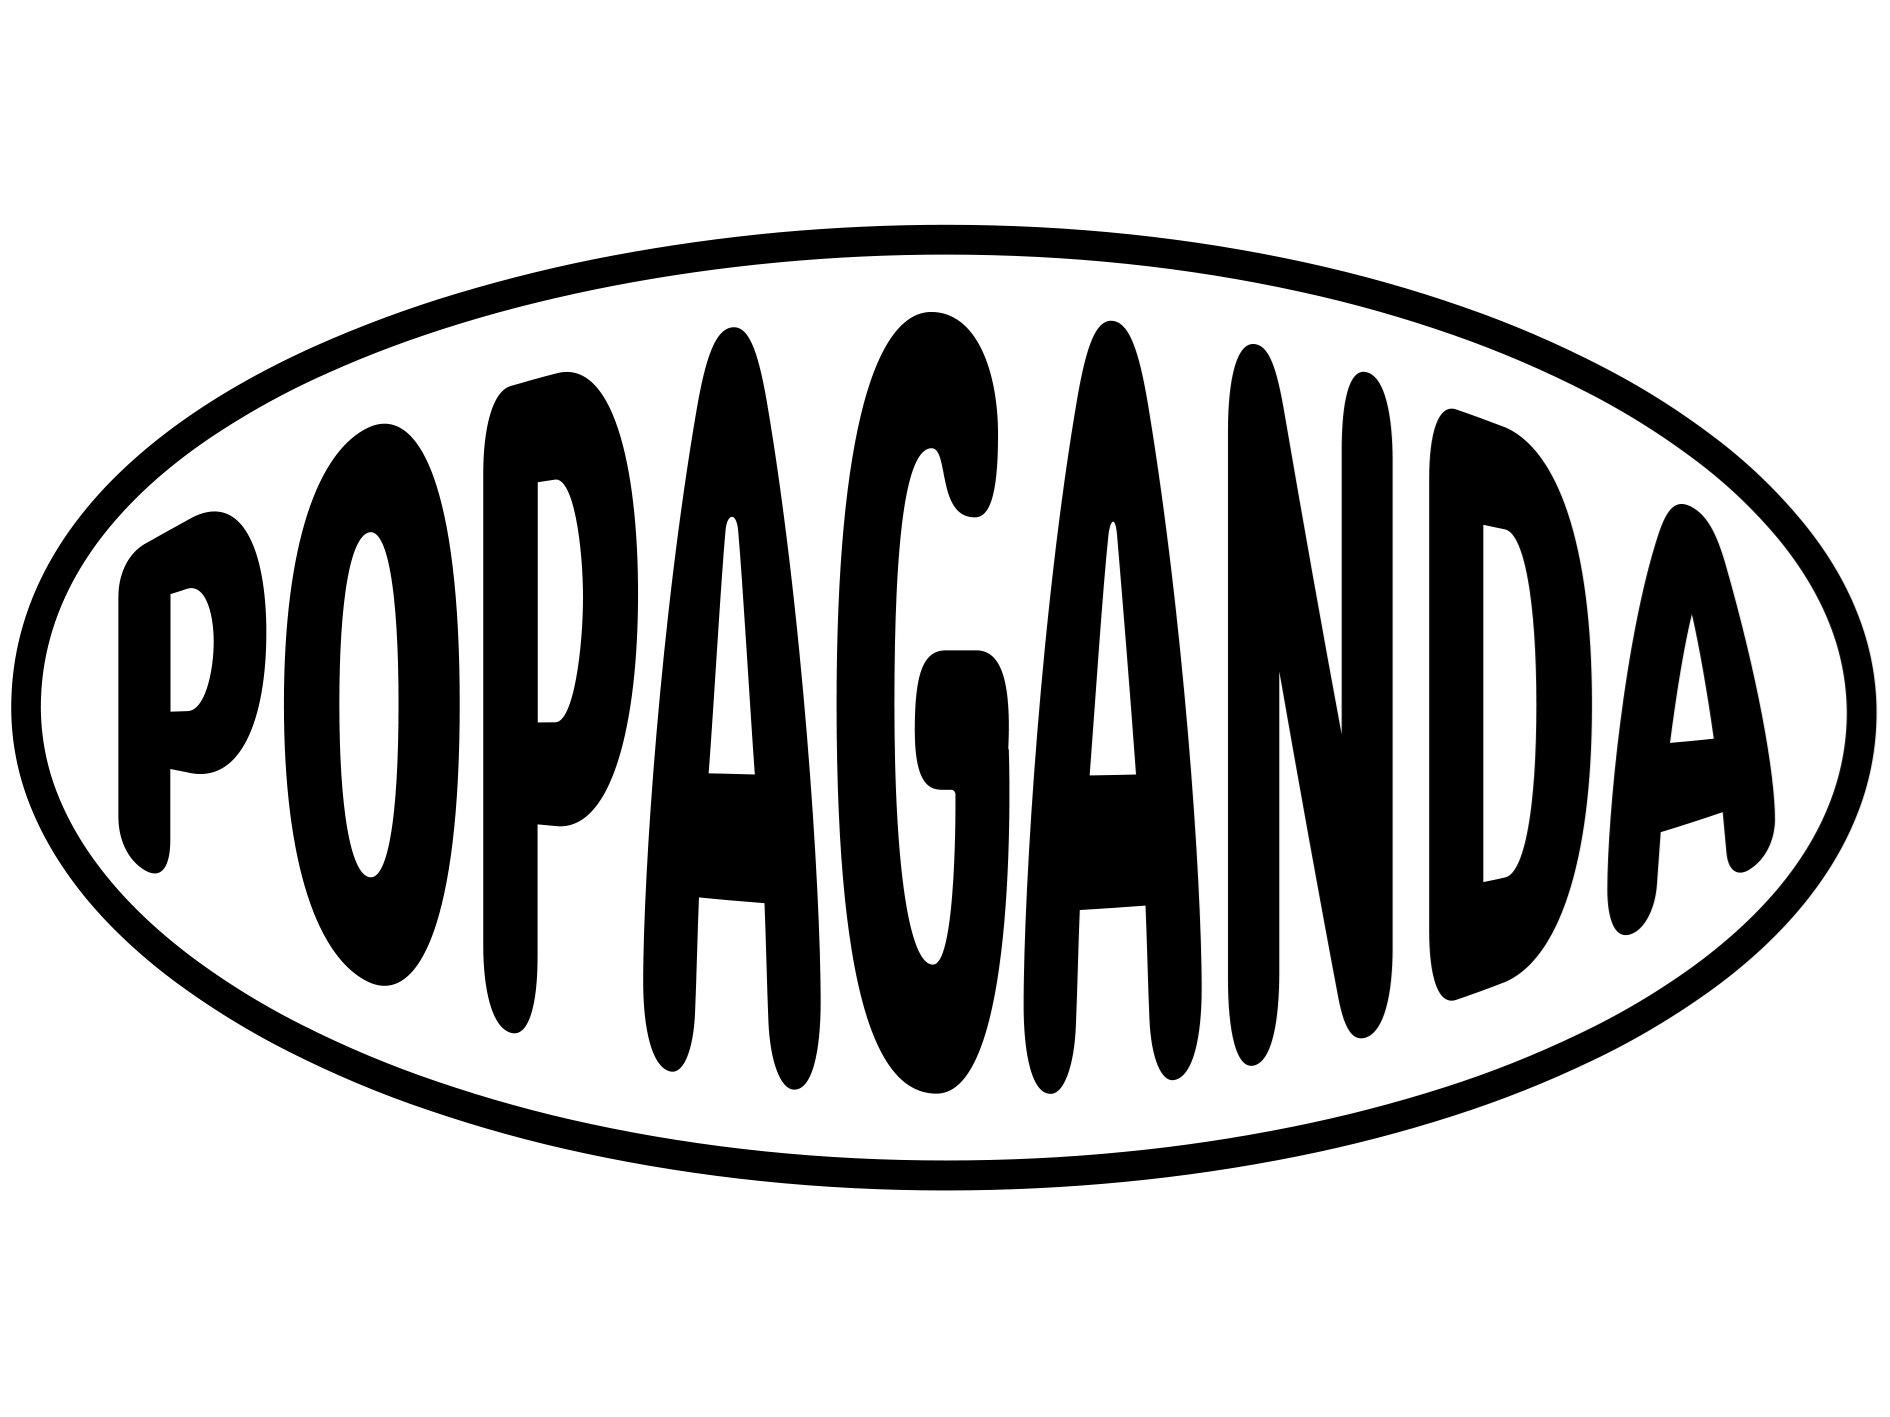 Popaganda